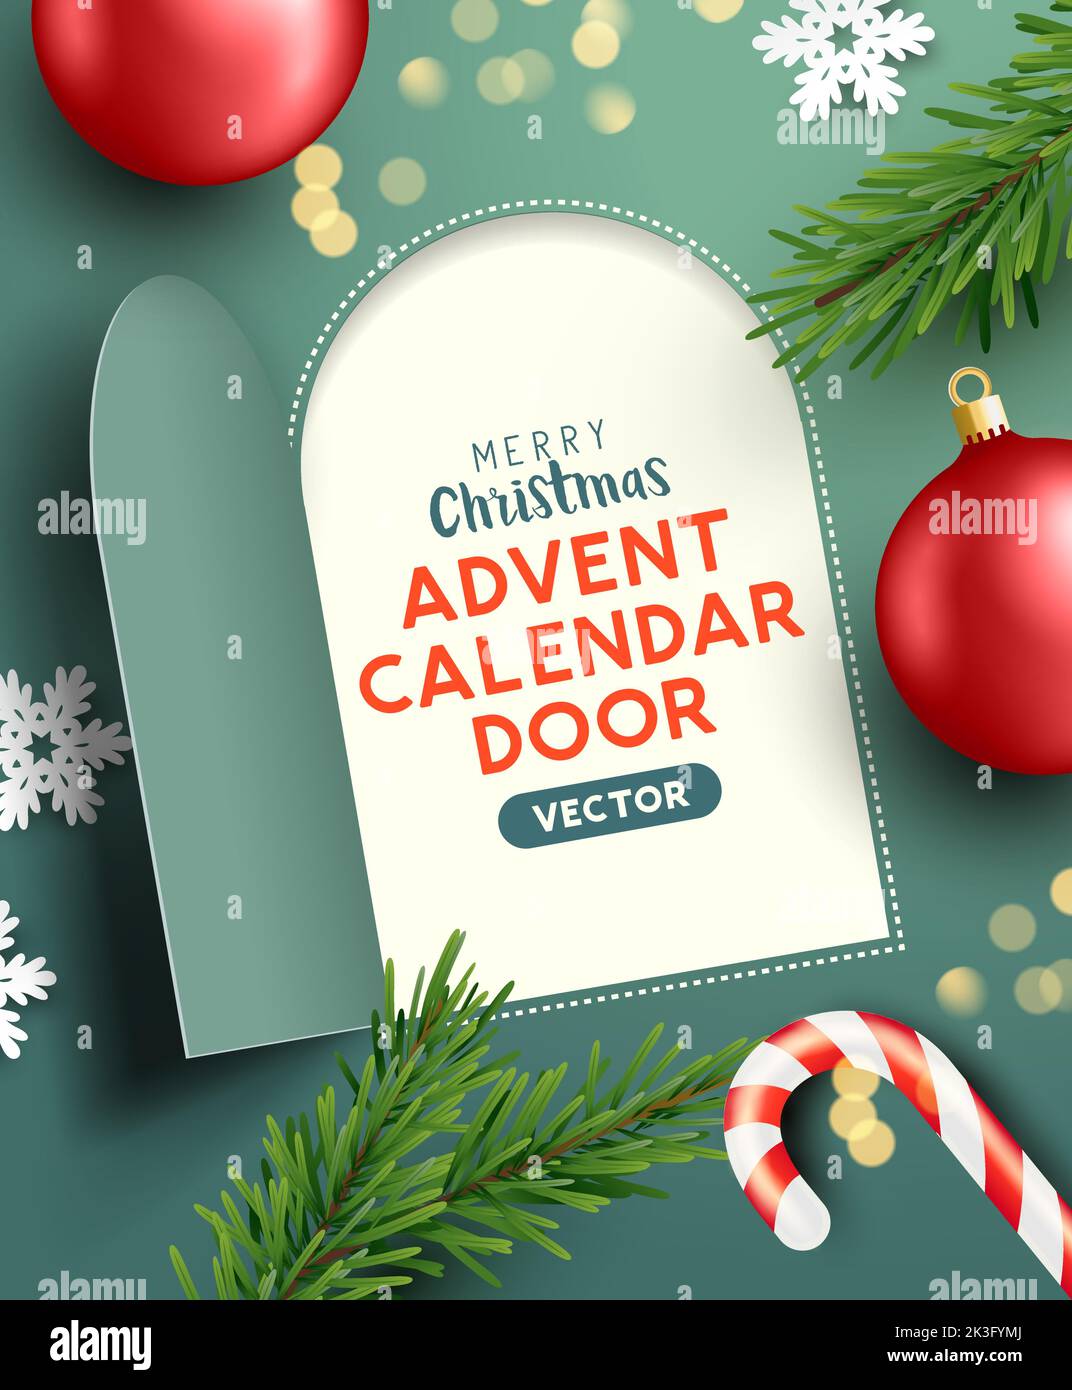 La puerta del calendario de adviento de Navidad se abre para revelar un mensaje festivo. Ilustración vectorial. Ilustración del Vector